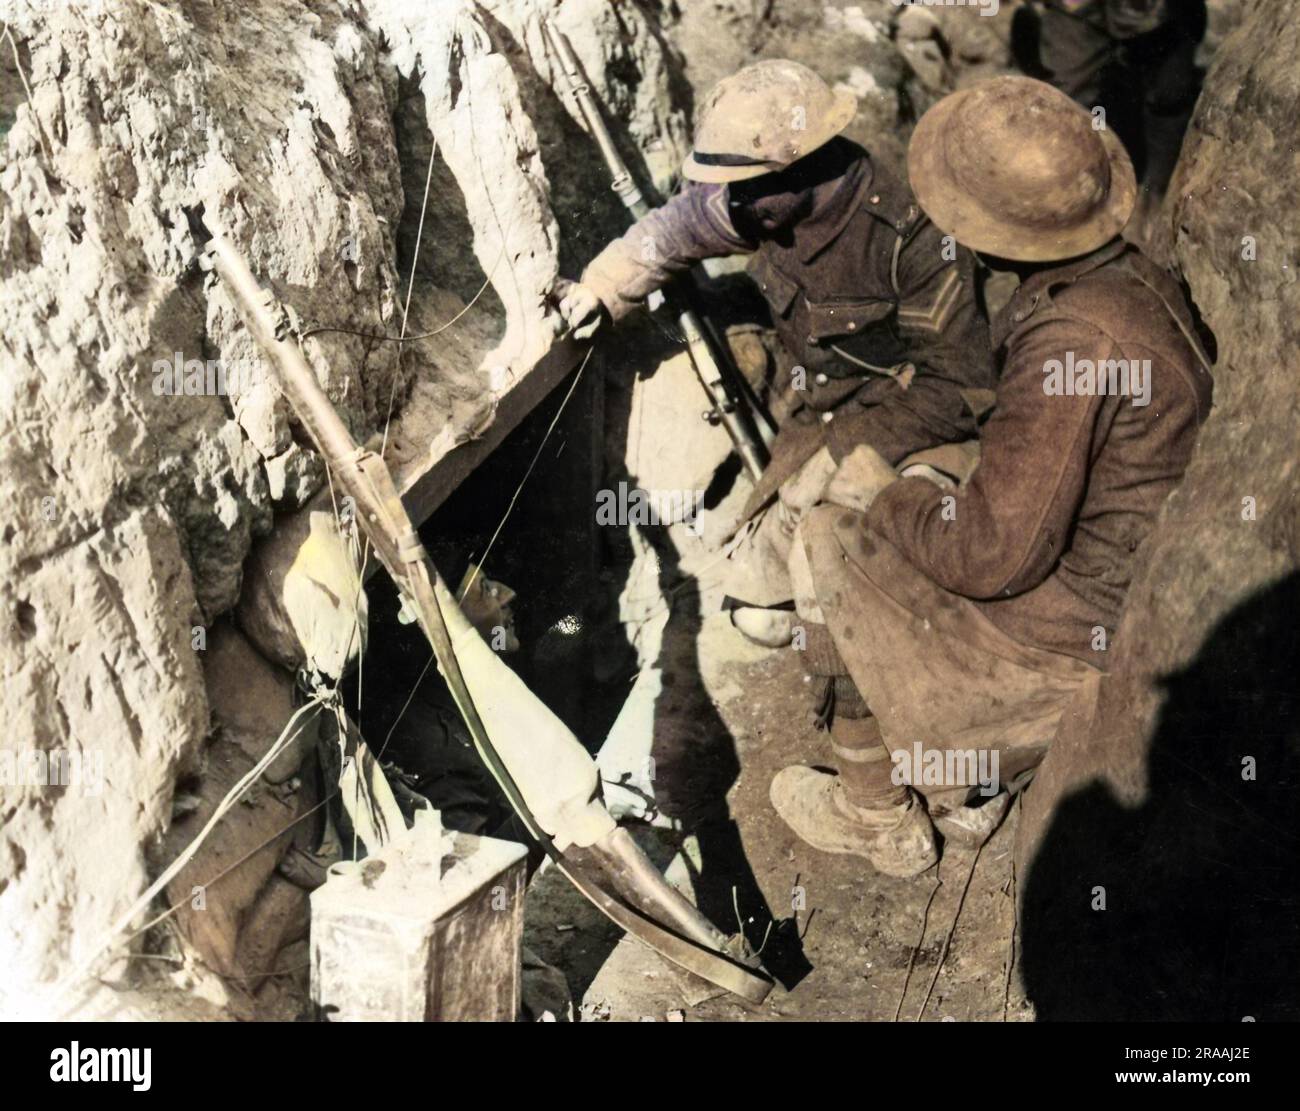 Zwei britische Soldaten in einem Graben oder Dugout an der Westfront in Frankreich während des Ersten Weltkriegs, die eine Nachricht an einen Offizier senden. Datum: Ca. 1916 Stockfoto